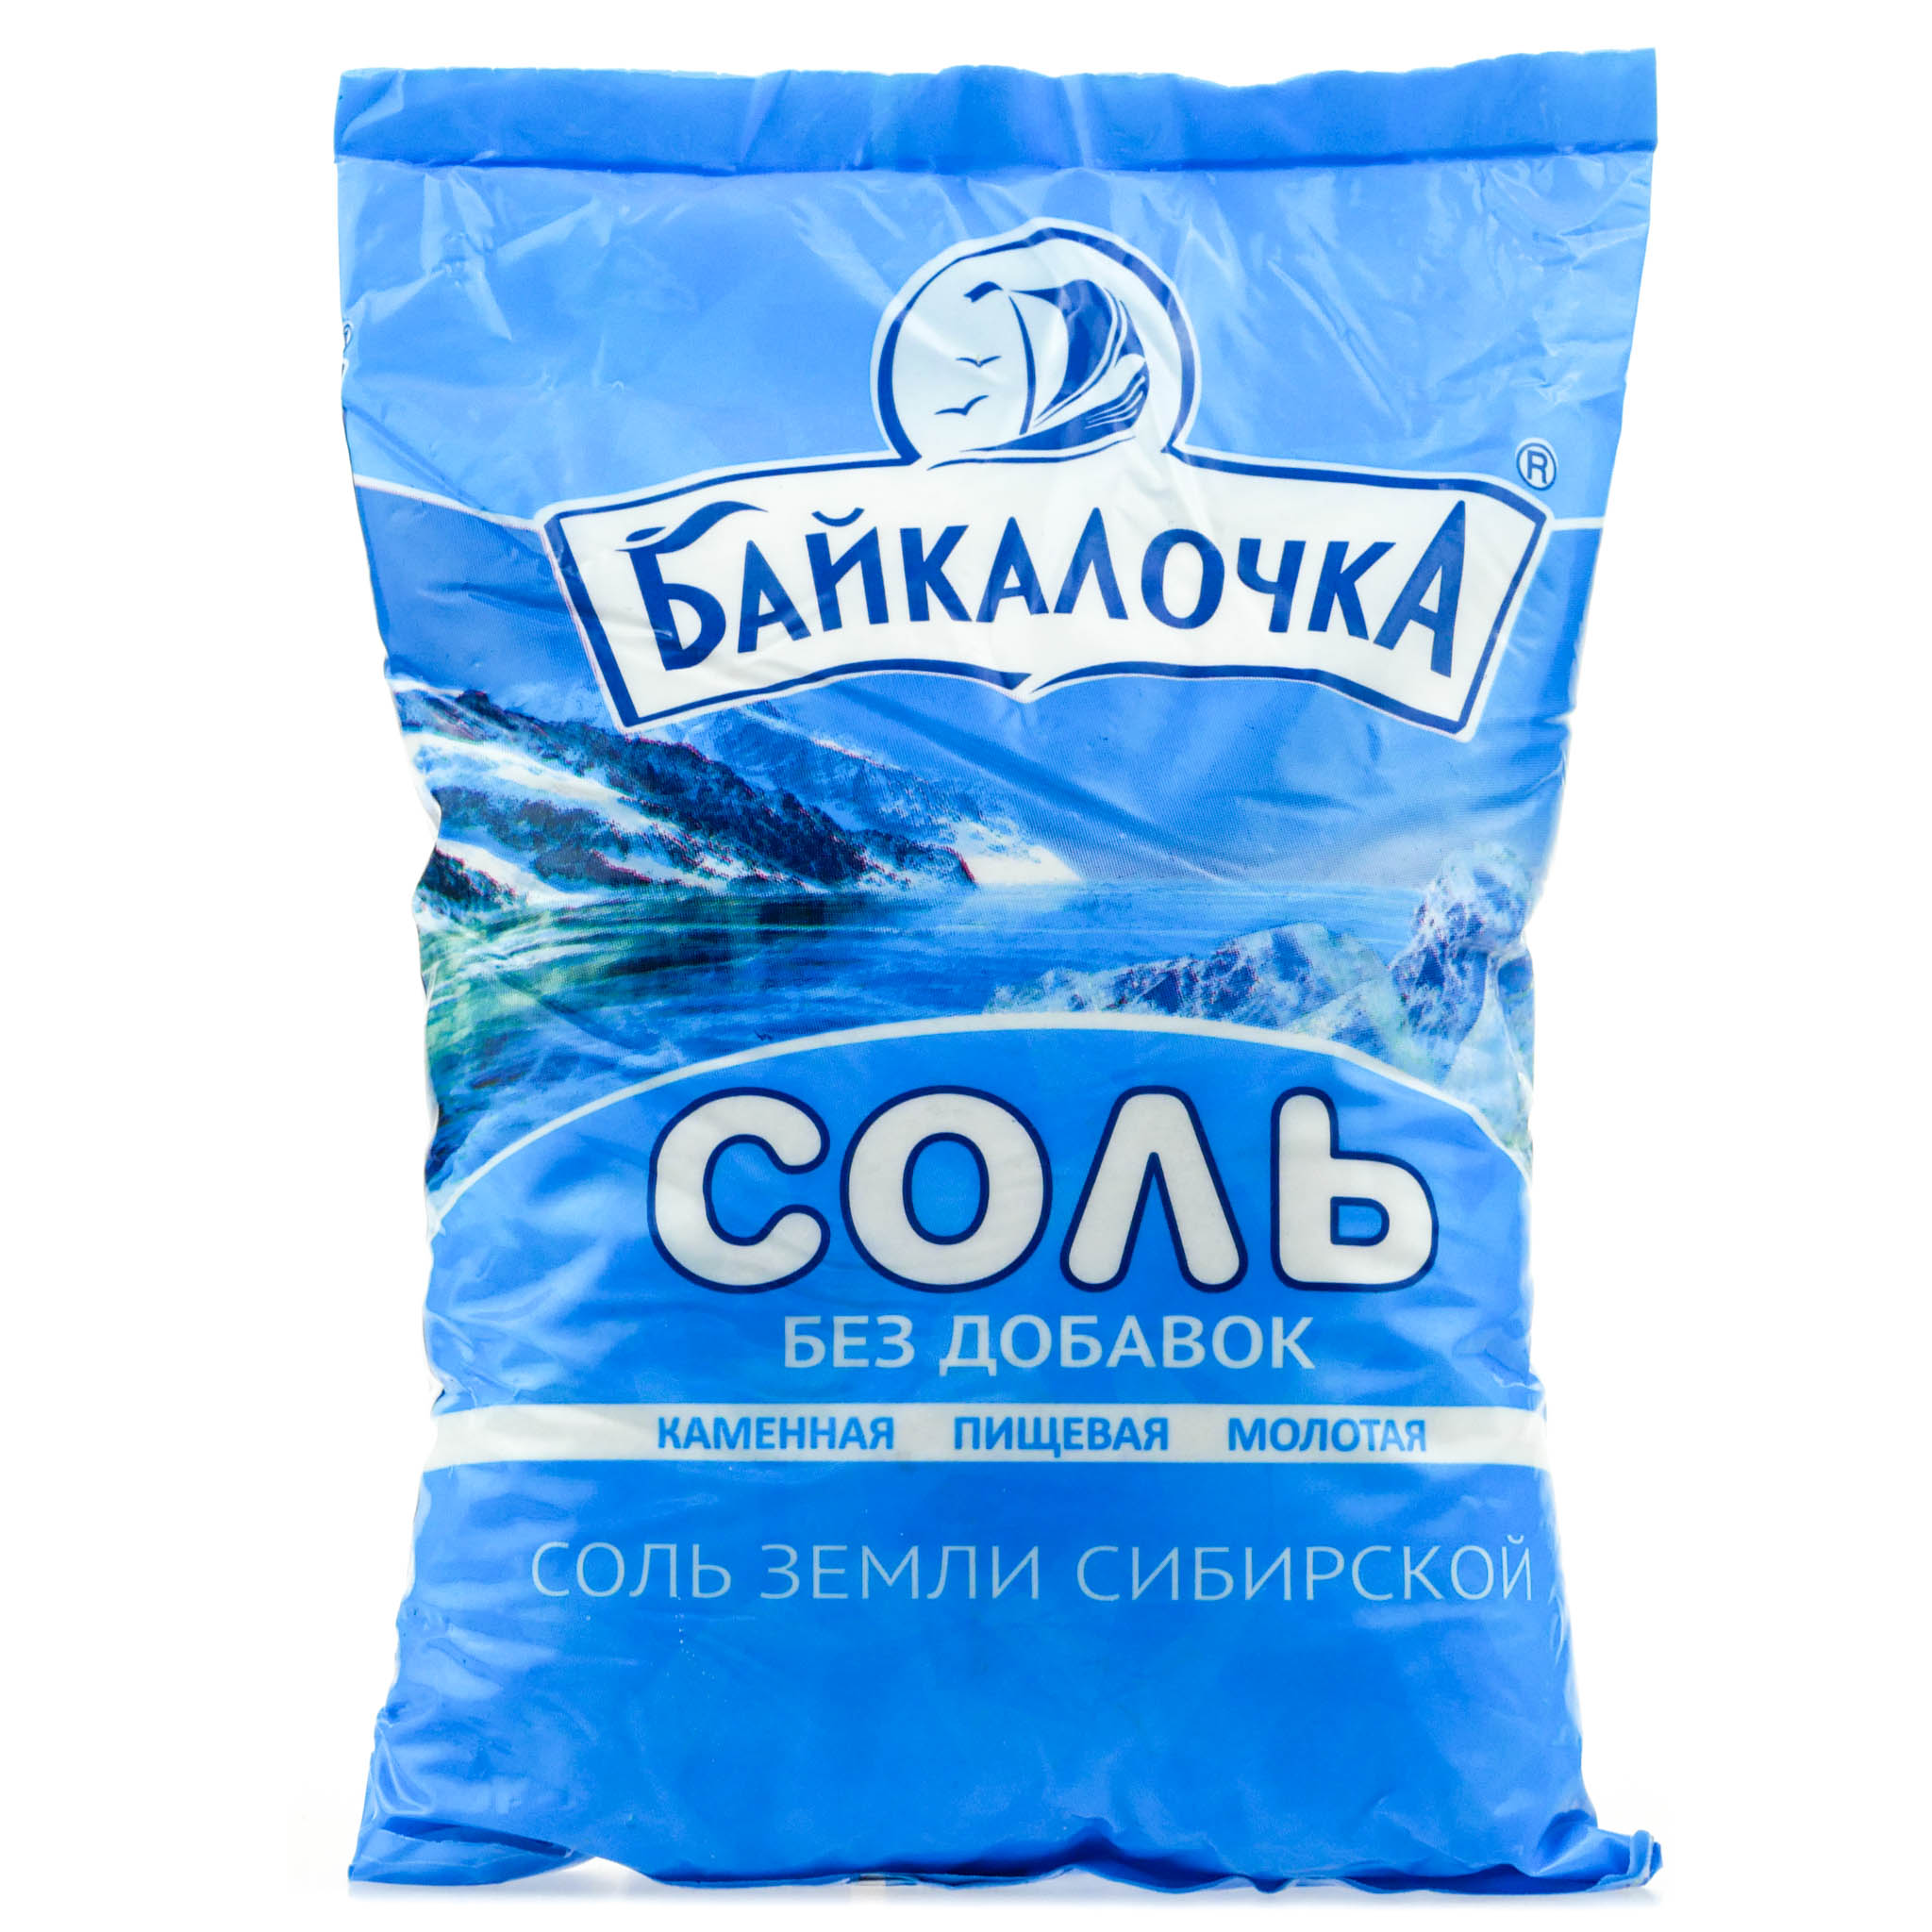 Где Купить Соль В Челябинске